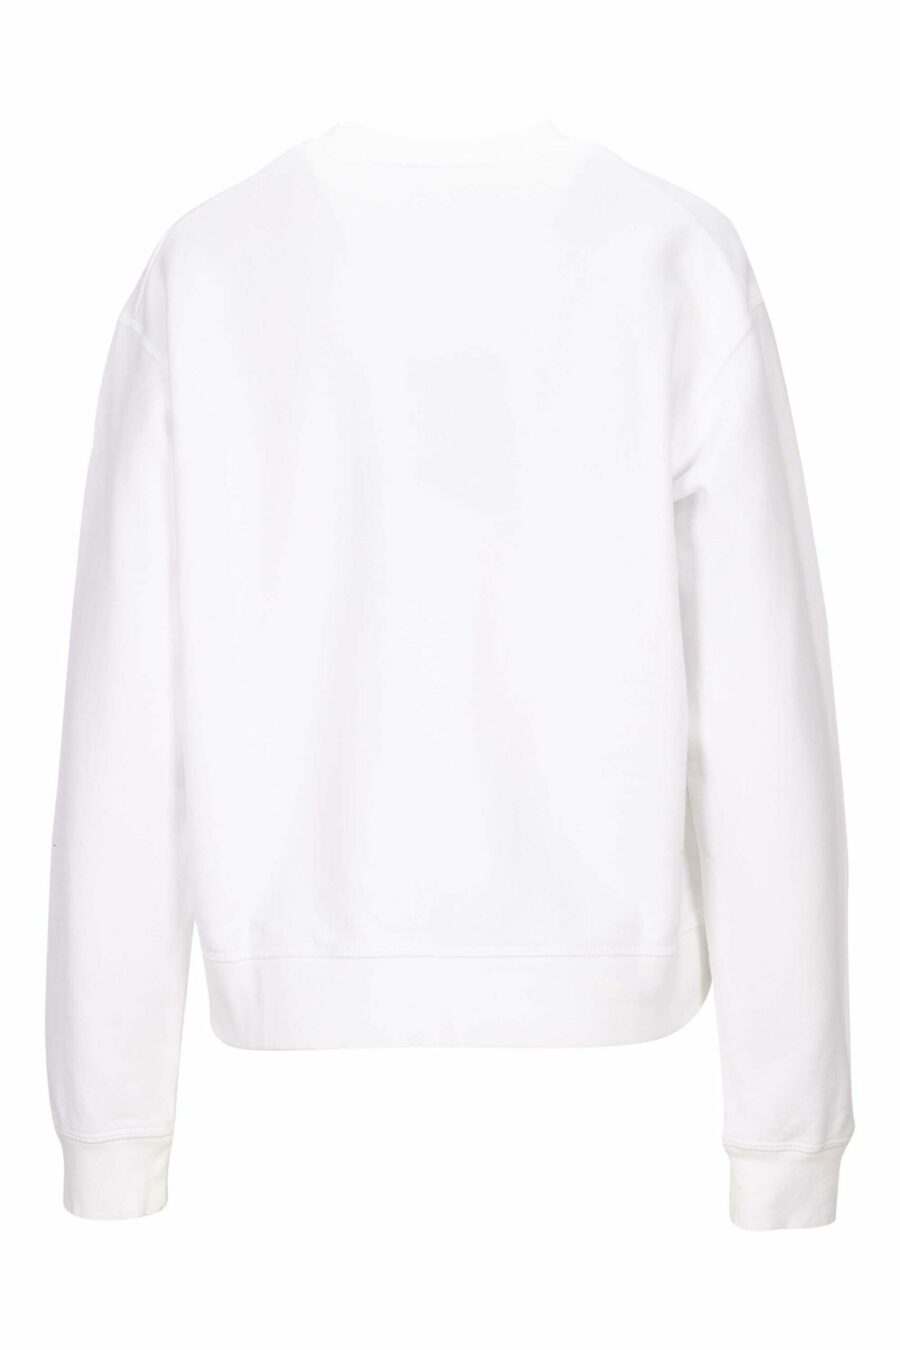 Weißes Sweatshirt mit "icon darling" Maxilogo - 8054148401849 1 skaliert